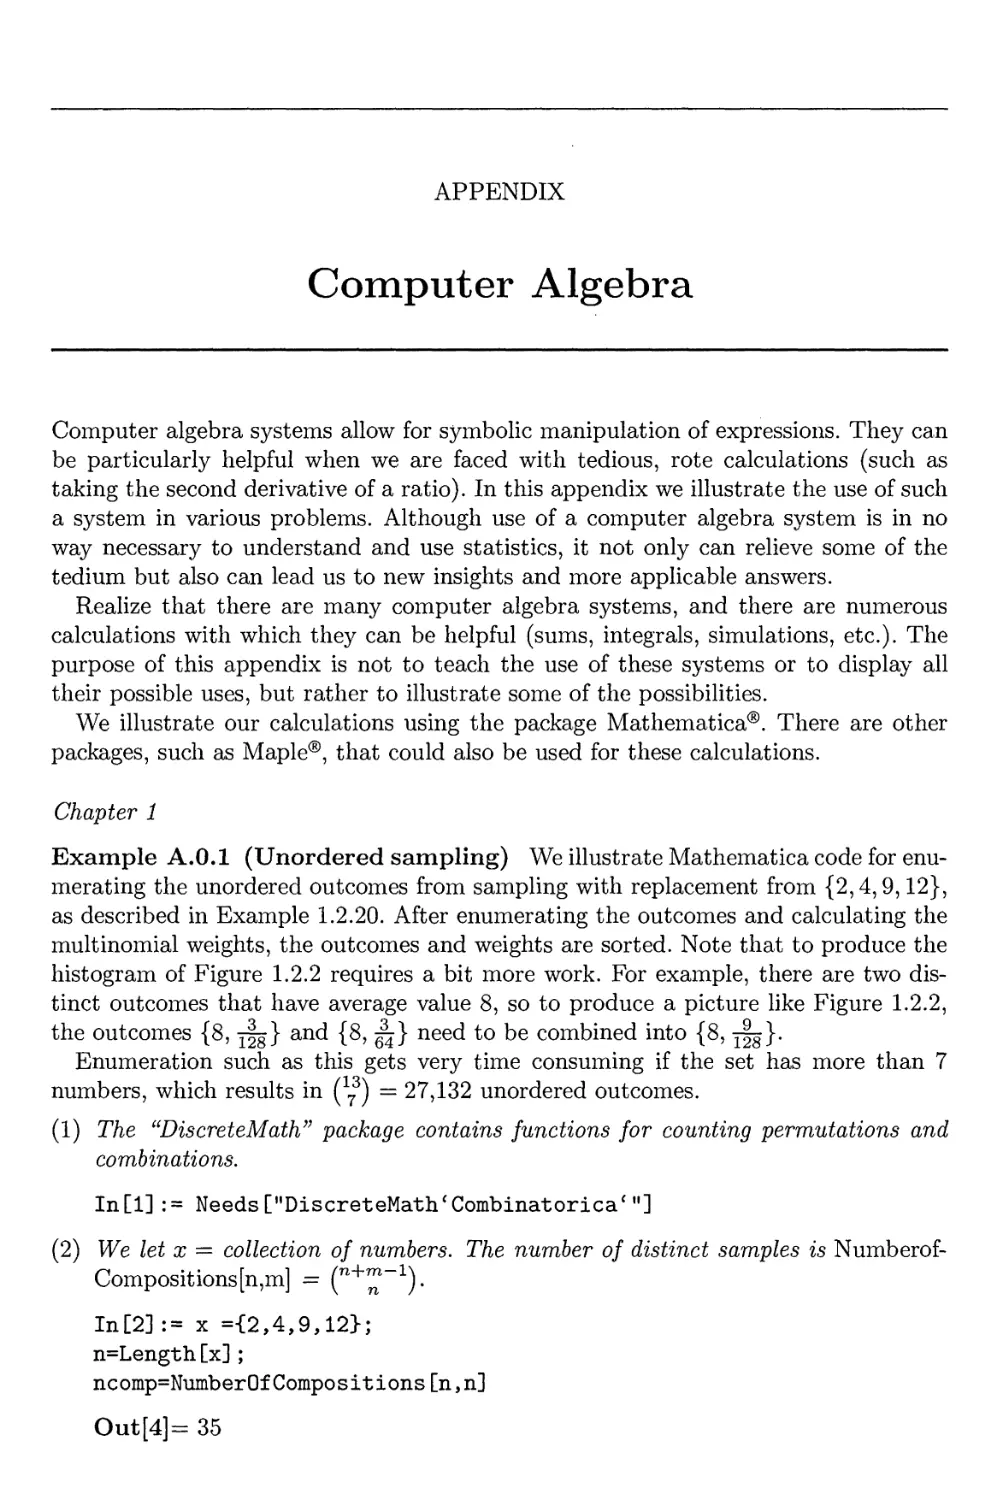 Appendix: Computer Algebra